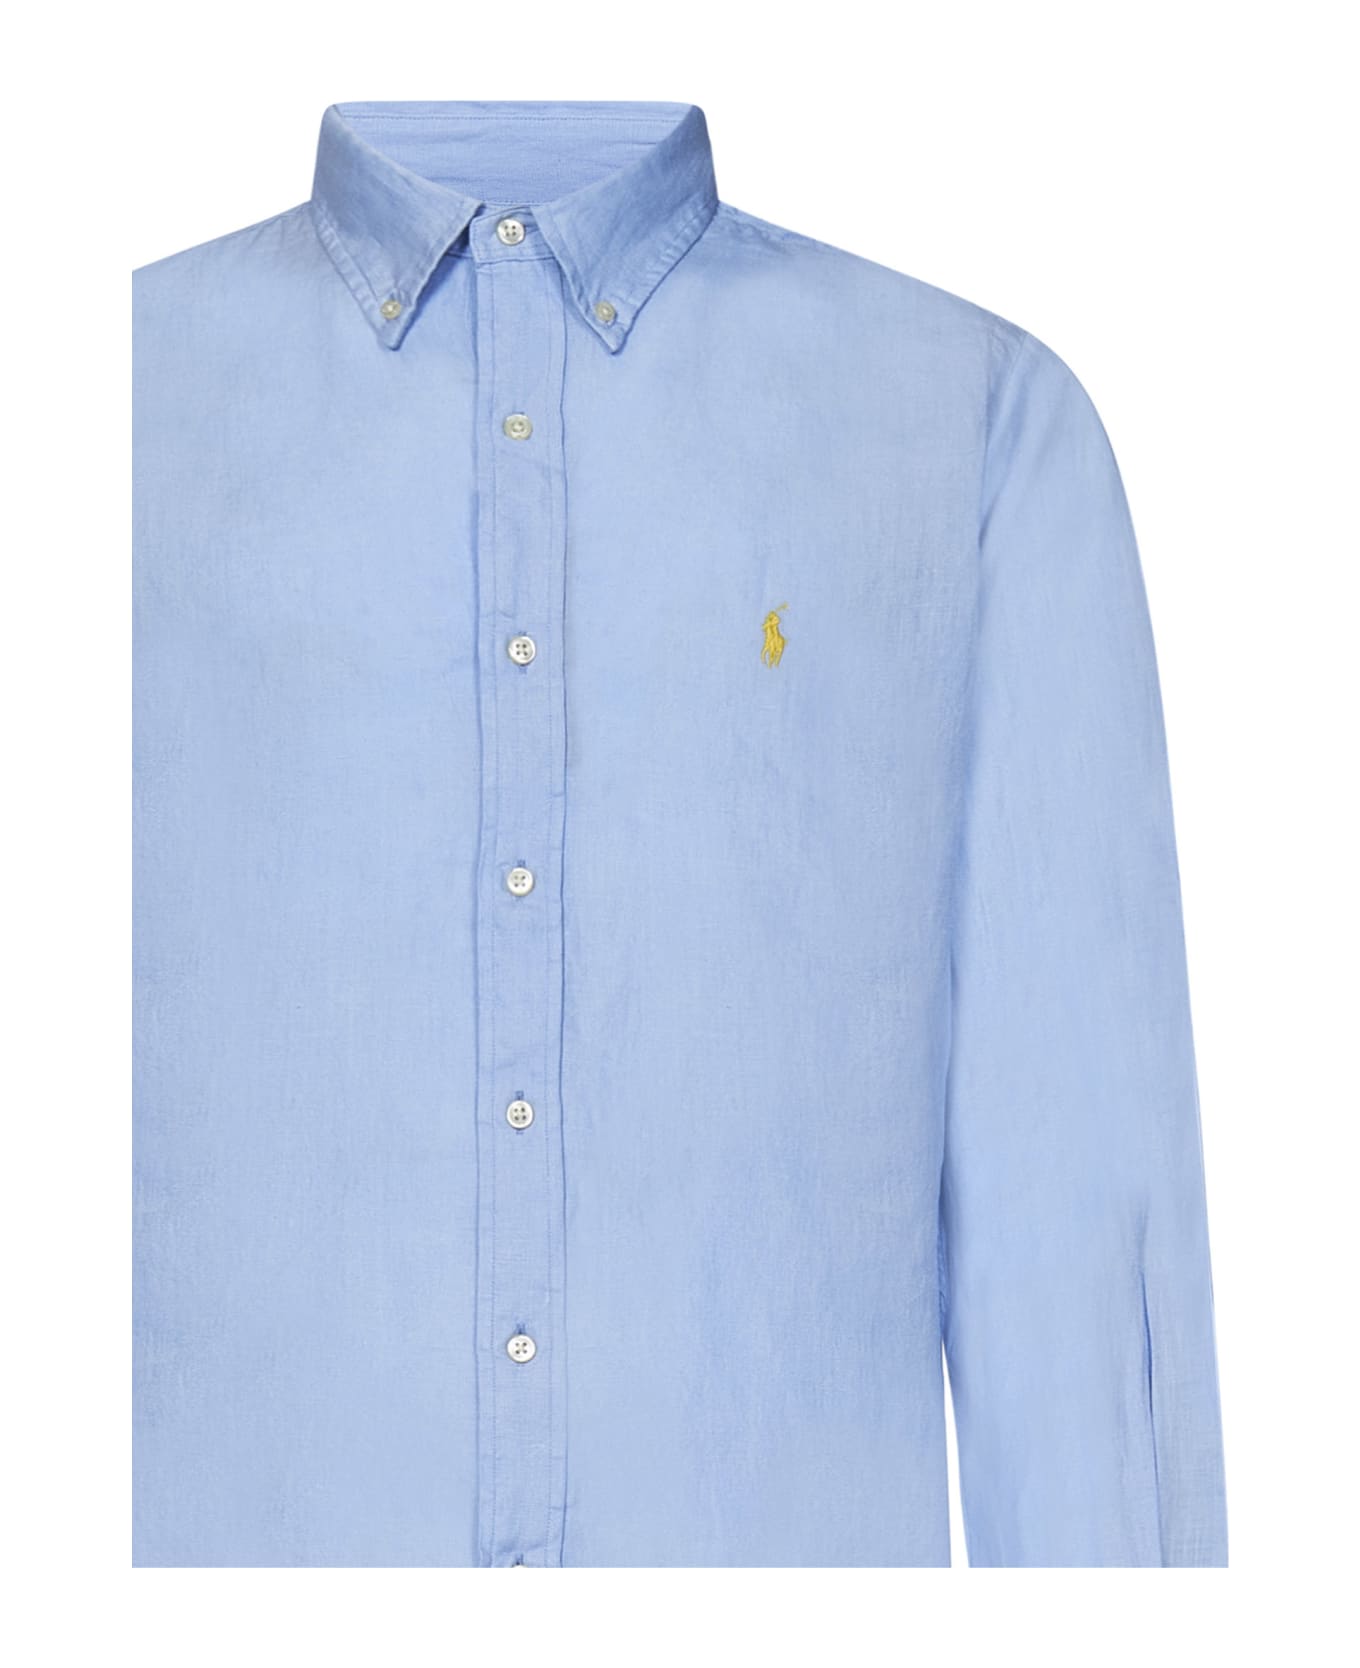 Polo Ralph Lauren 'classics' Linen Shirt - LIGHT BLUE